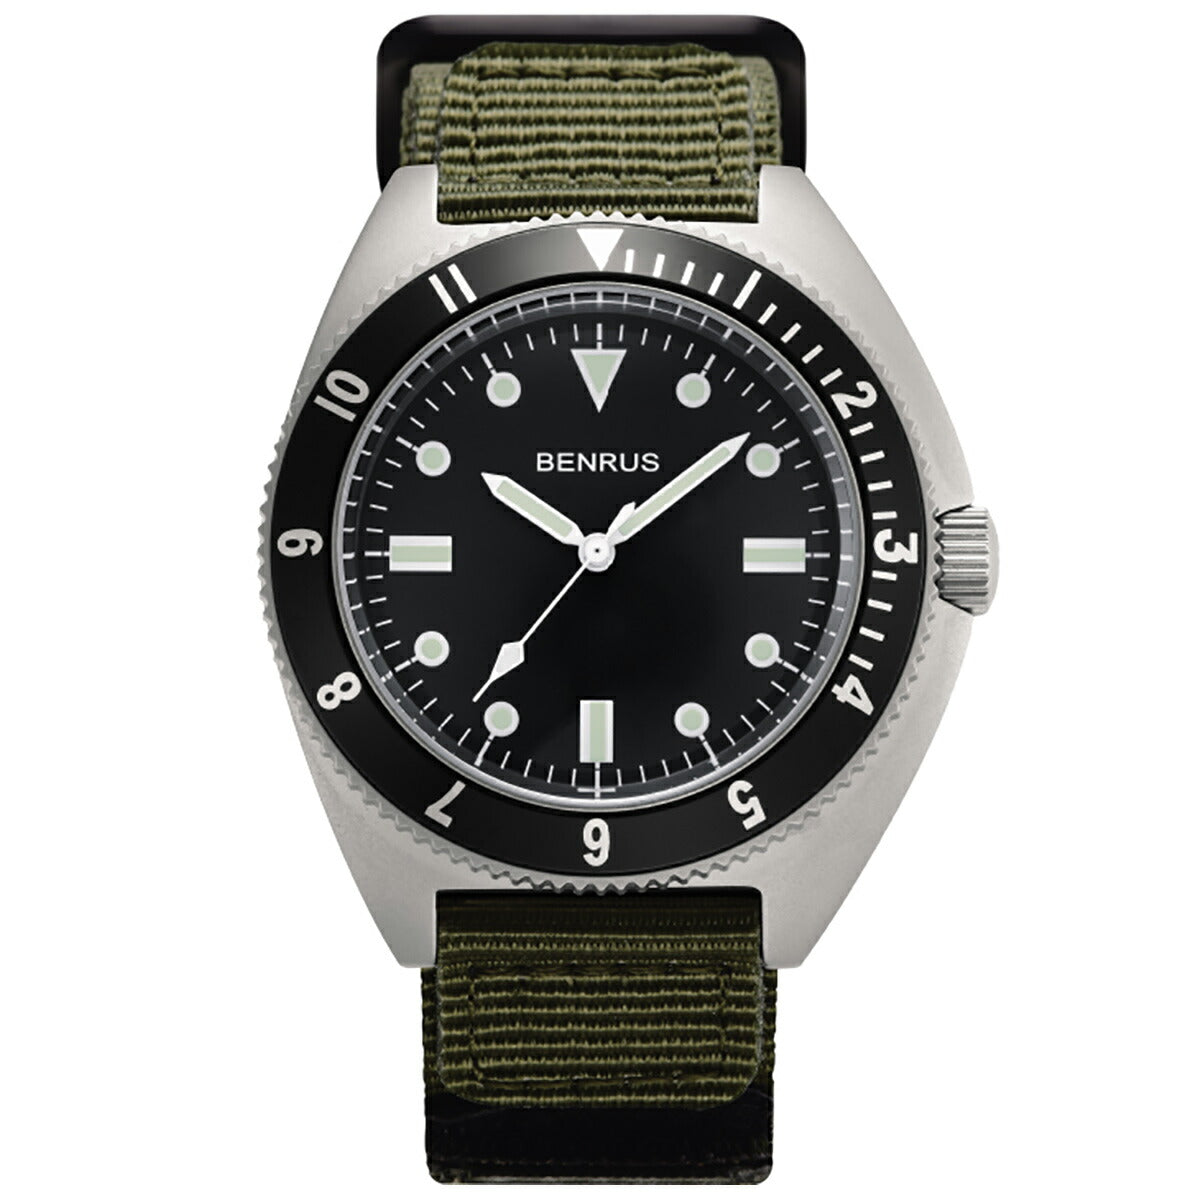 ベンラス BENRUS 腕時計 メンズ コンバットシリーズ TYPE-I SV COMBAT KH ミリタリーウォッチ シルバー/カーキ